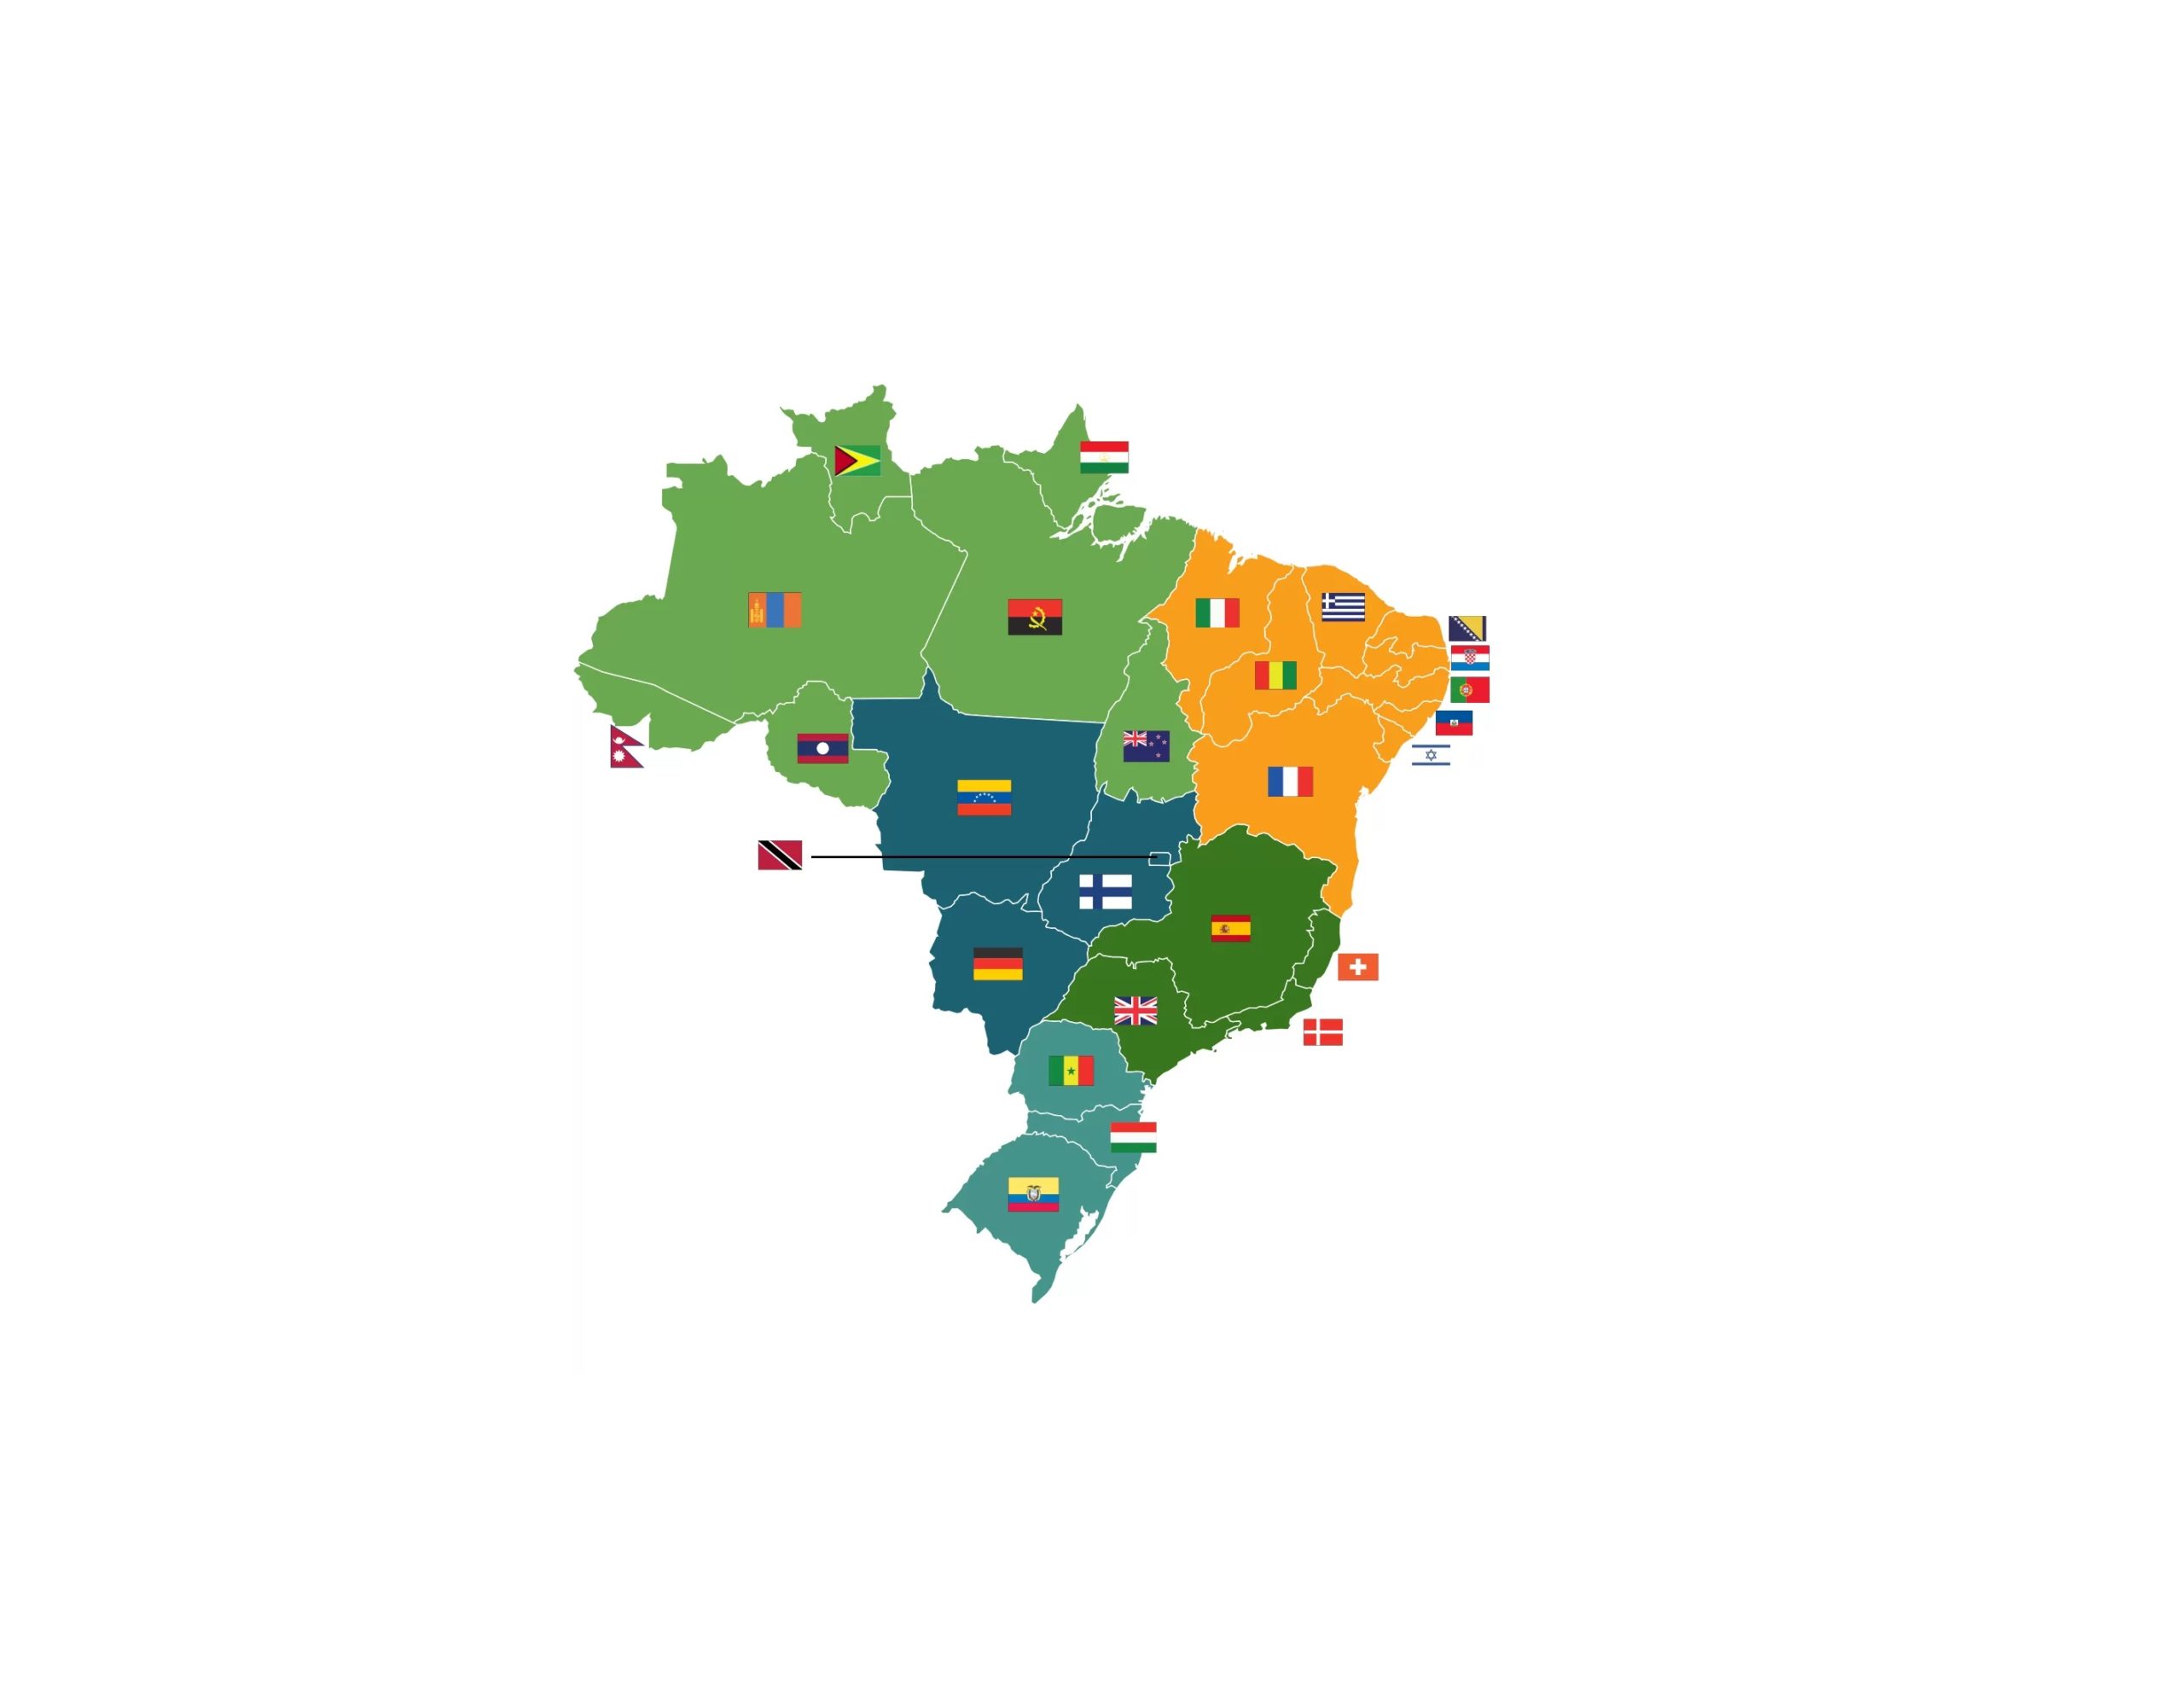 Portal Acesse Politica O Site De Politica Mais Acessado Da Bahia Acessepolitica.com .br Mapa Brasil Tamanho 1 Scaled 